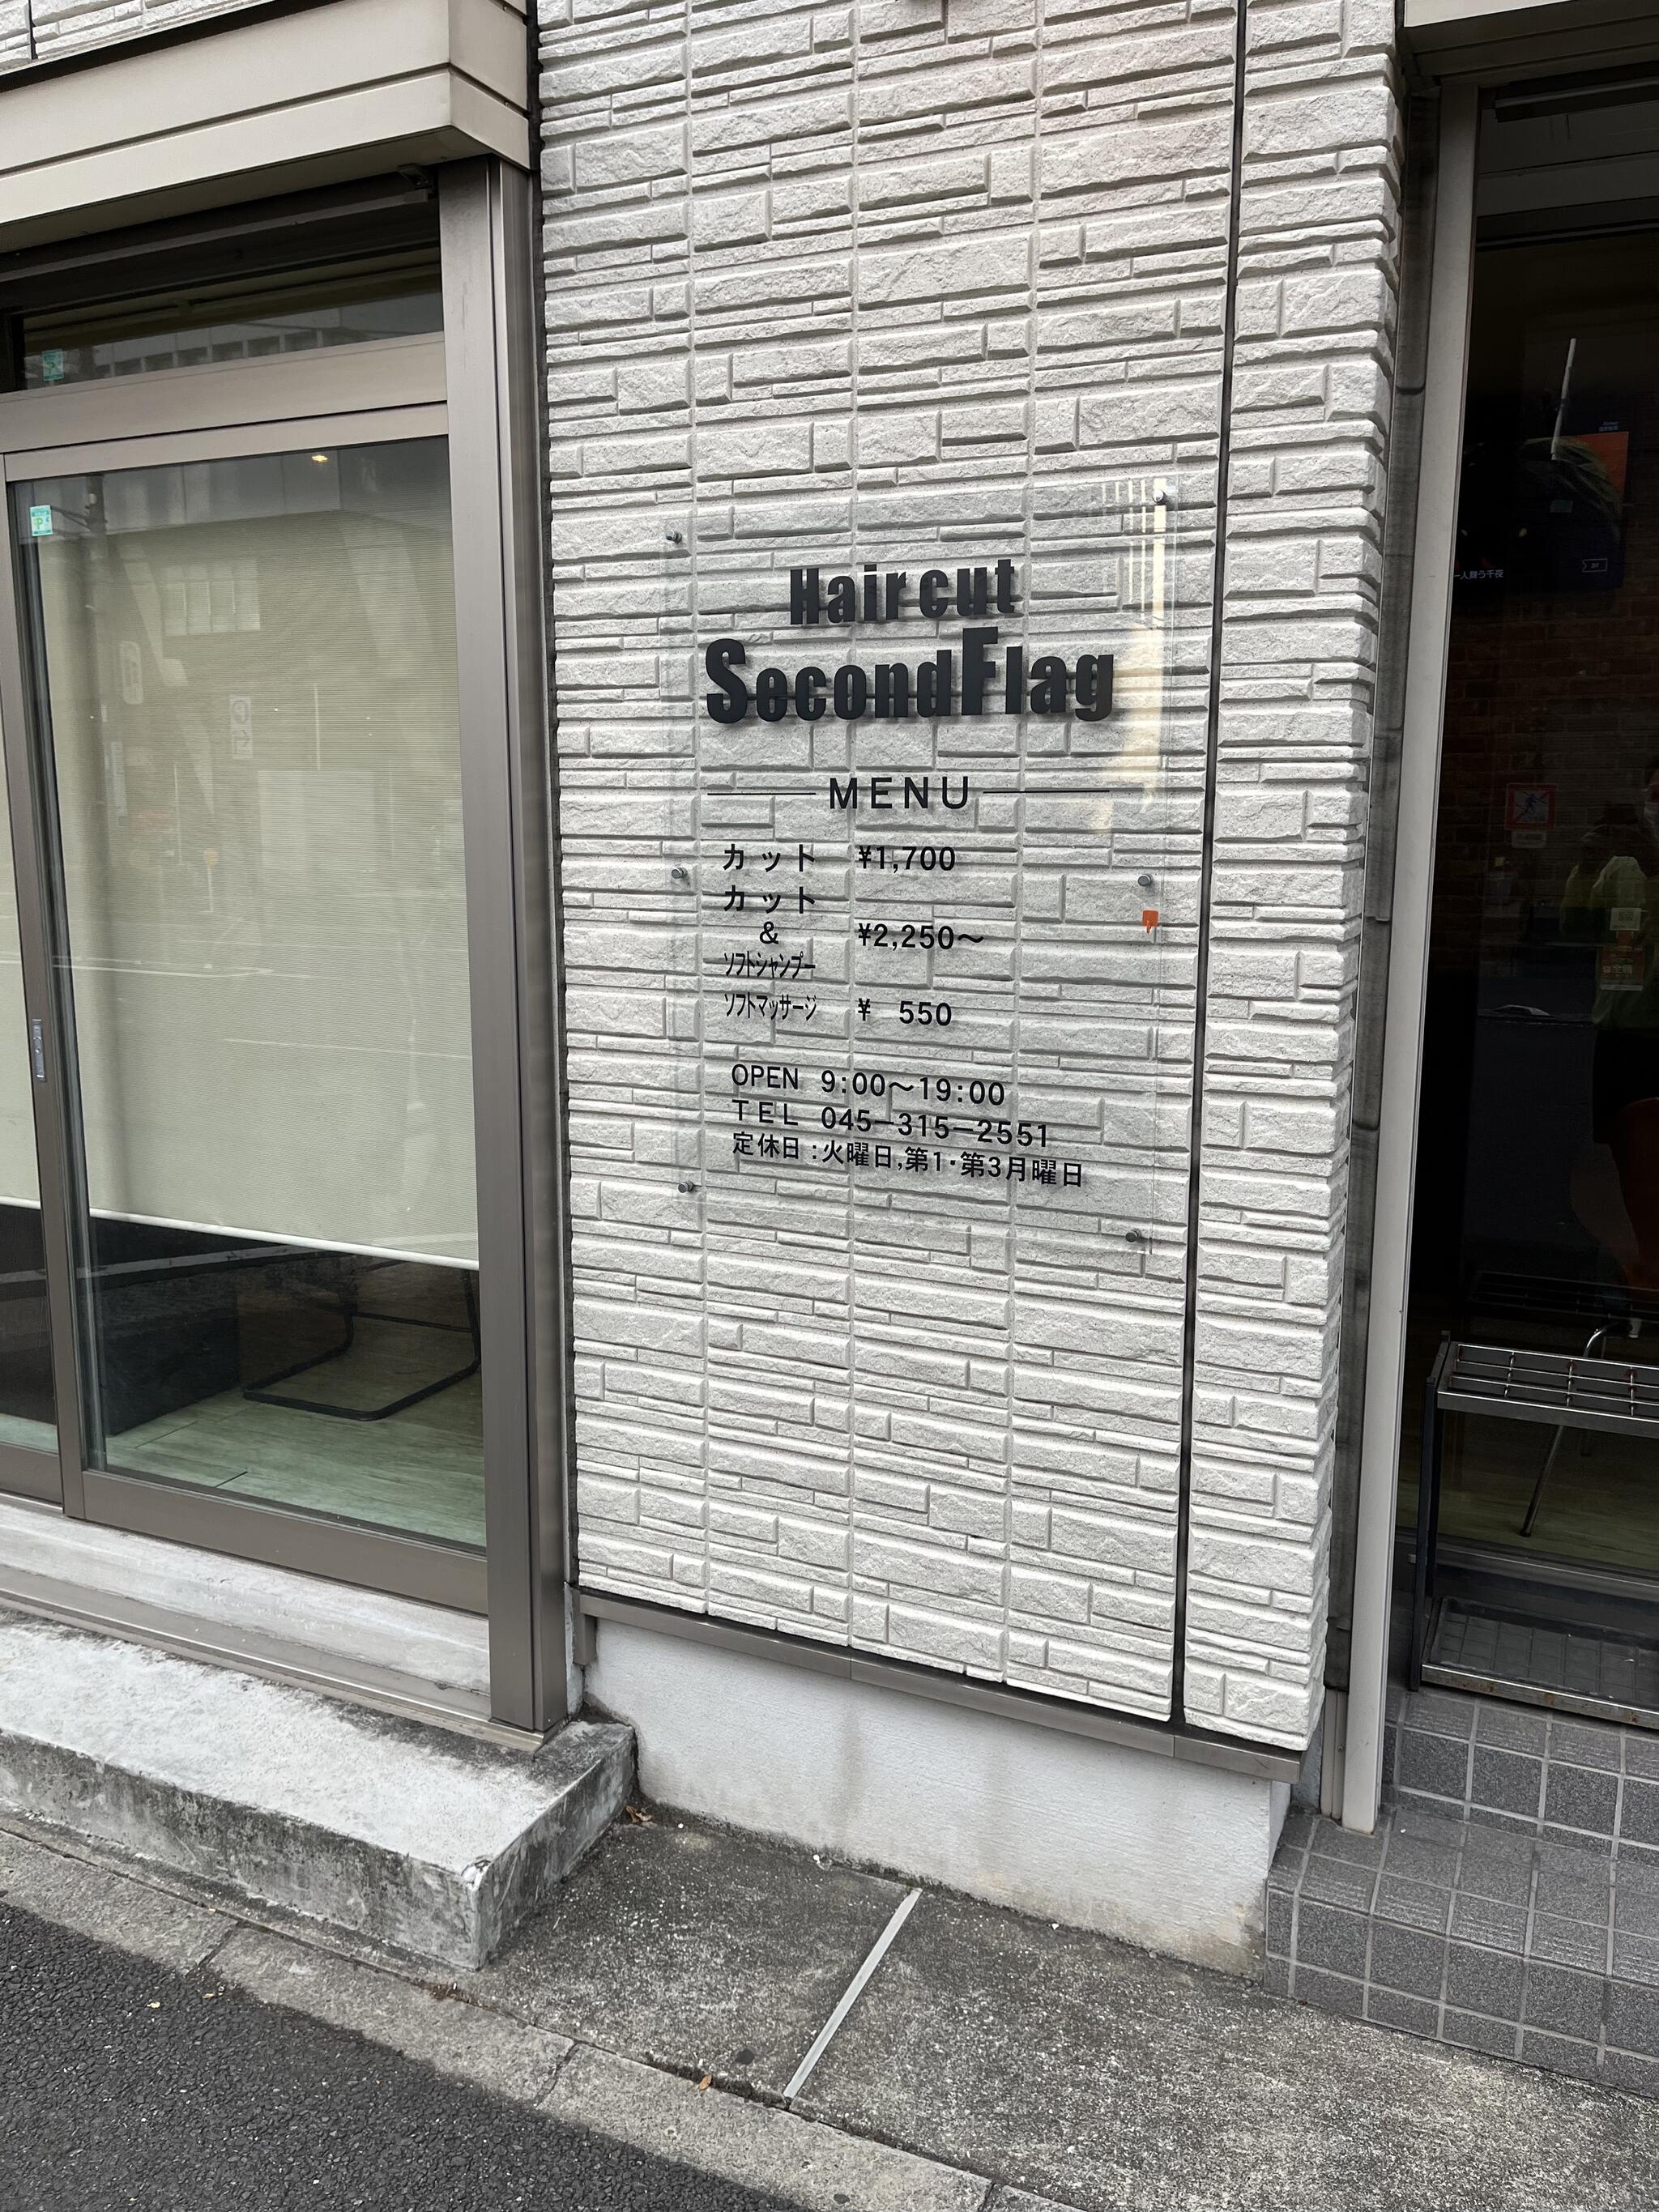 セカンドフラック - 横浜市南区浦舟町/理容店 | Yahoo!マップ